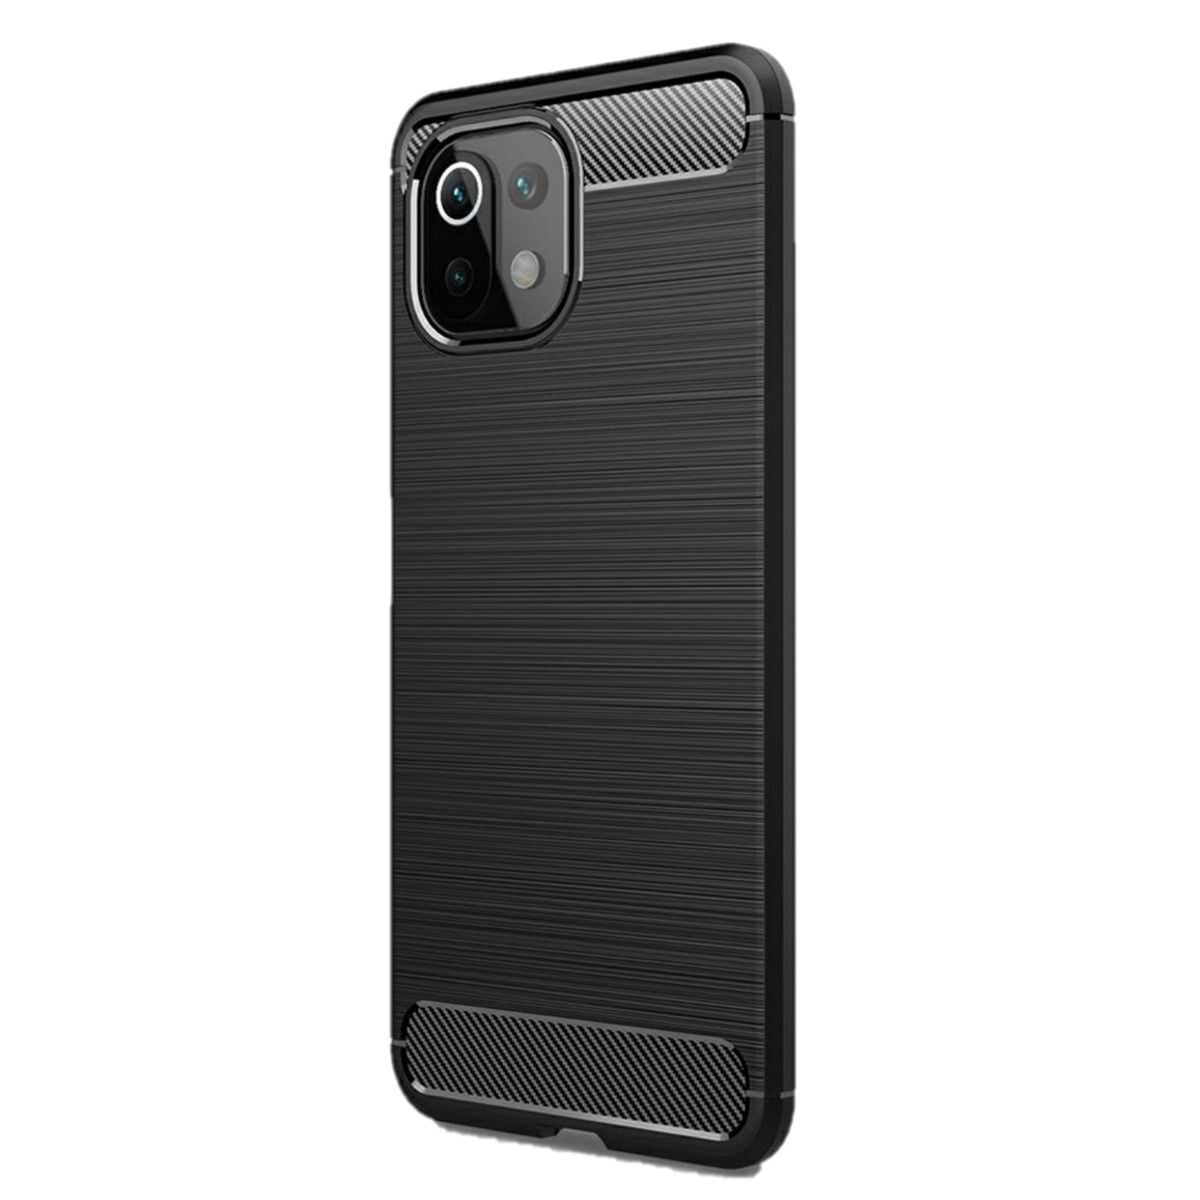 COVERKINGZ Handycase Backcover, Lite im NE Mi Xiaomi, schwarz Carbon 5G, Lite 5G / 11 11 Look